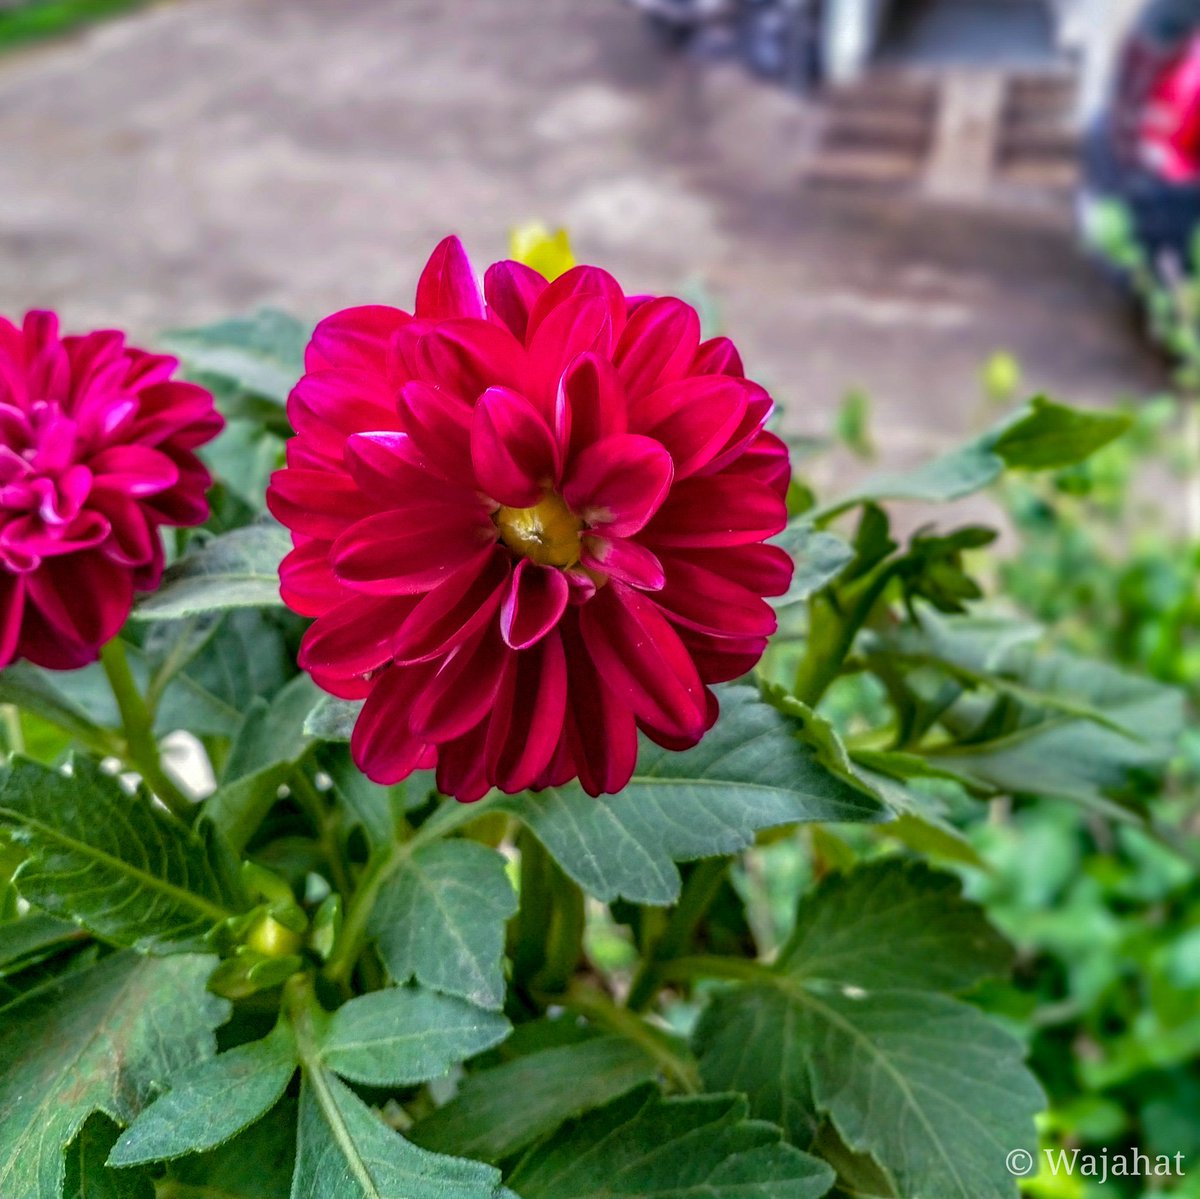 || Fresh flowers || 

#ShotOnNokia #Nokia8 #SwitchOnTheSunshine #nature #Flowers #growyourown @nothinbutanokia @pickit @TheLumians @NokiamobileIN @Nokiamobile @MobilePhotoBlog @NokiamobBlog @mynokiablog @Lightroom #Rains #BeautyAllAround #India